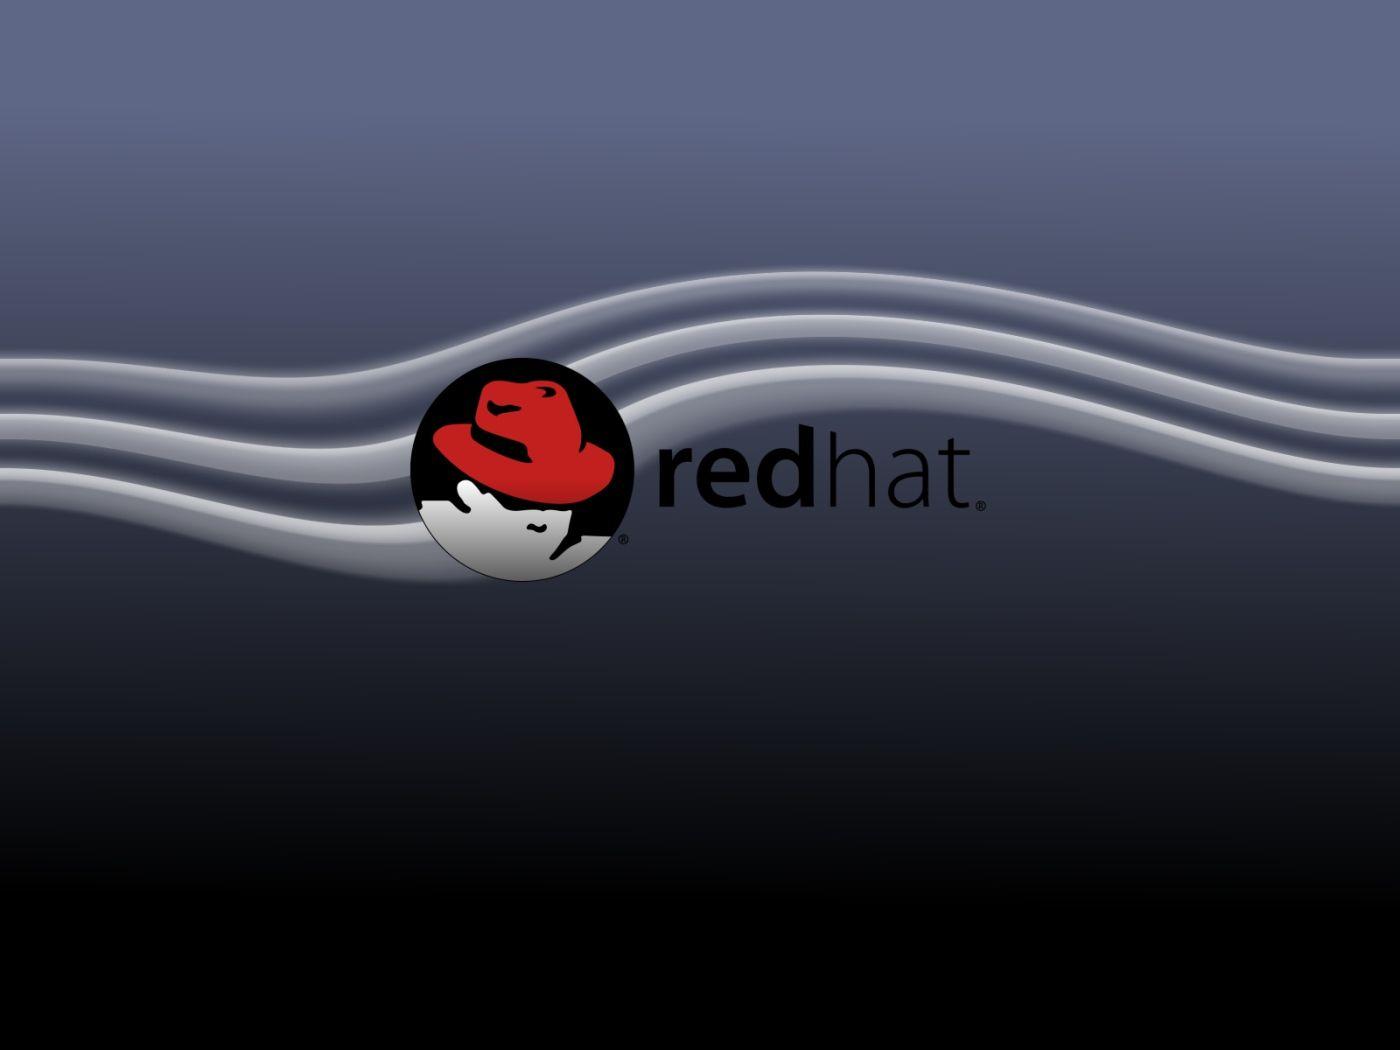 Red hat 7. Редхат линукс. Обои Red hat. Red hat заставка. Red hat Linux Wallpaper.